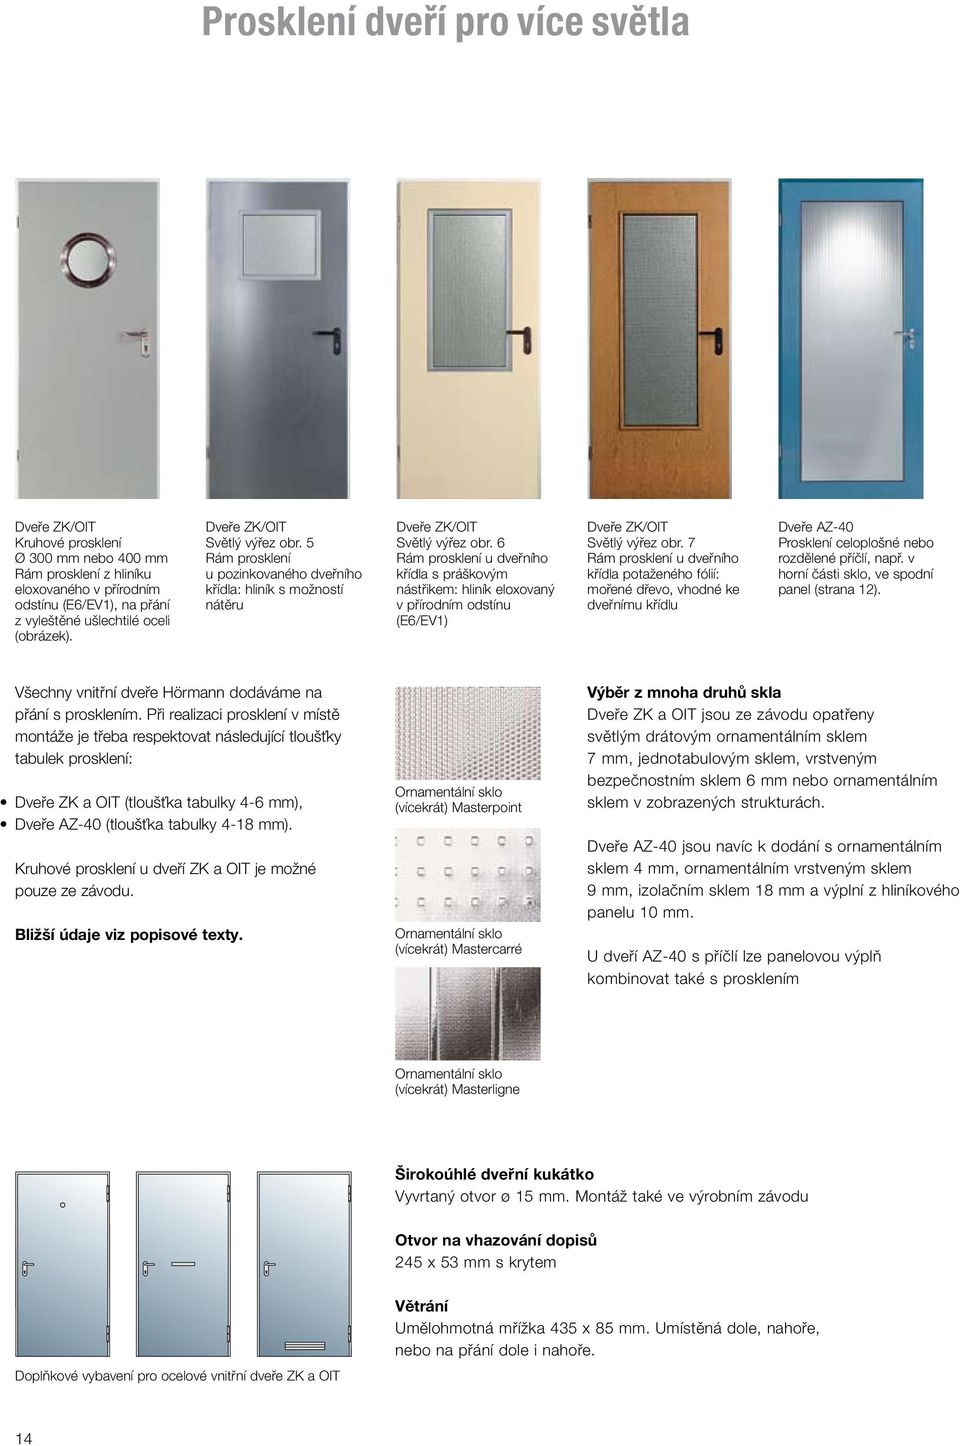 6 Rám prosklení u dveřního křídla s práškovým nástřikem: hliník eloxovaný v přírodním odstínu (E6/EV1) Dveře ZK/OIT Světlý výřez obr.